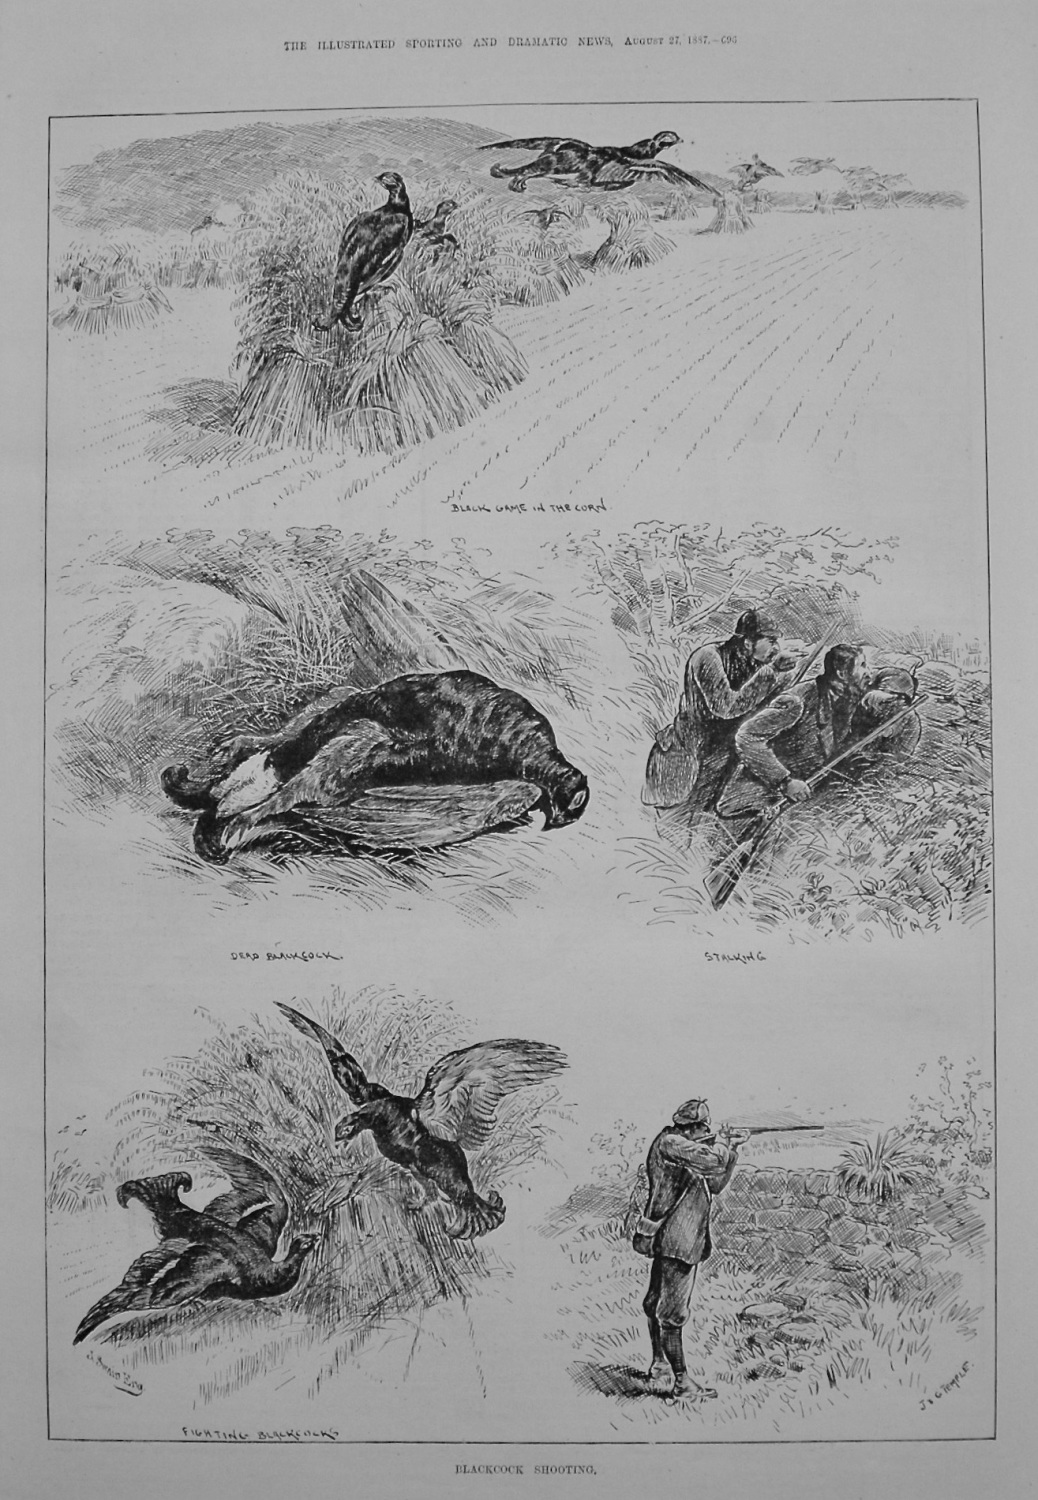 Blackcock Shooting. 1887